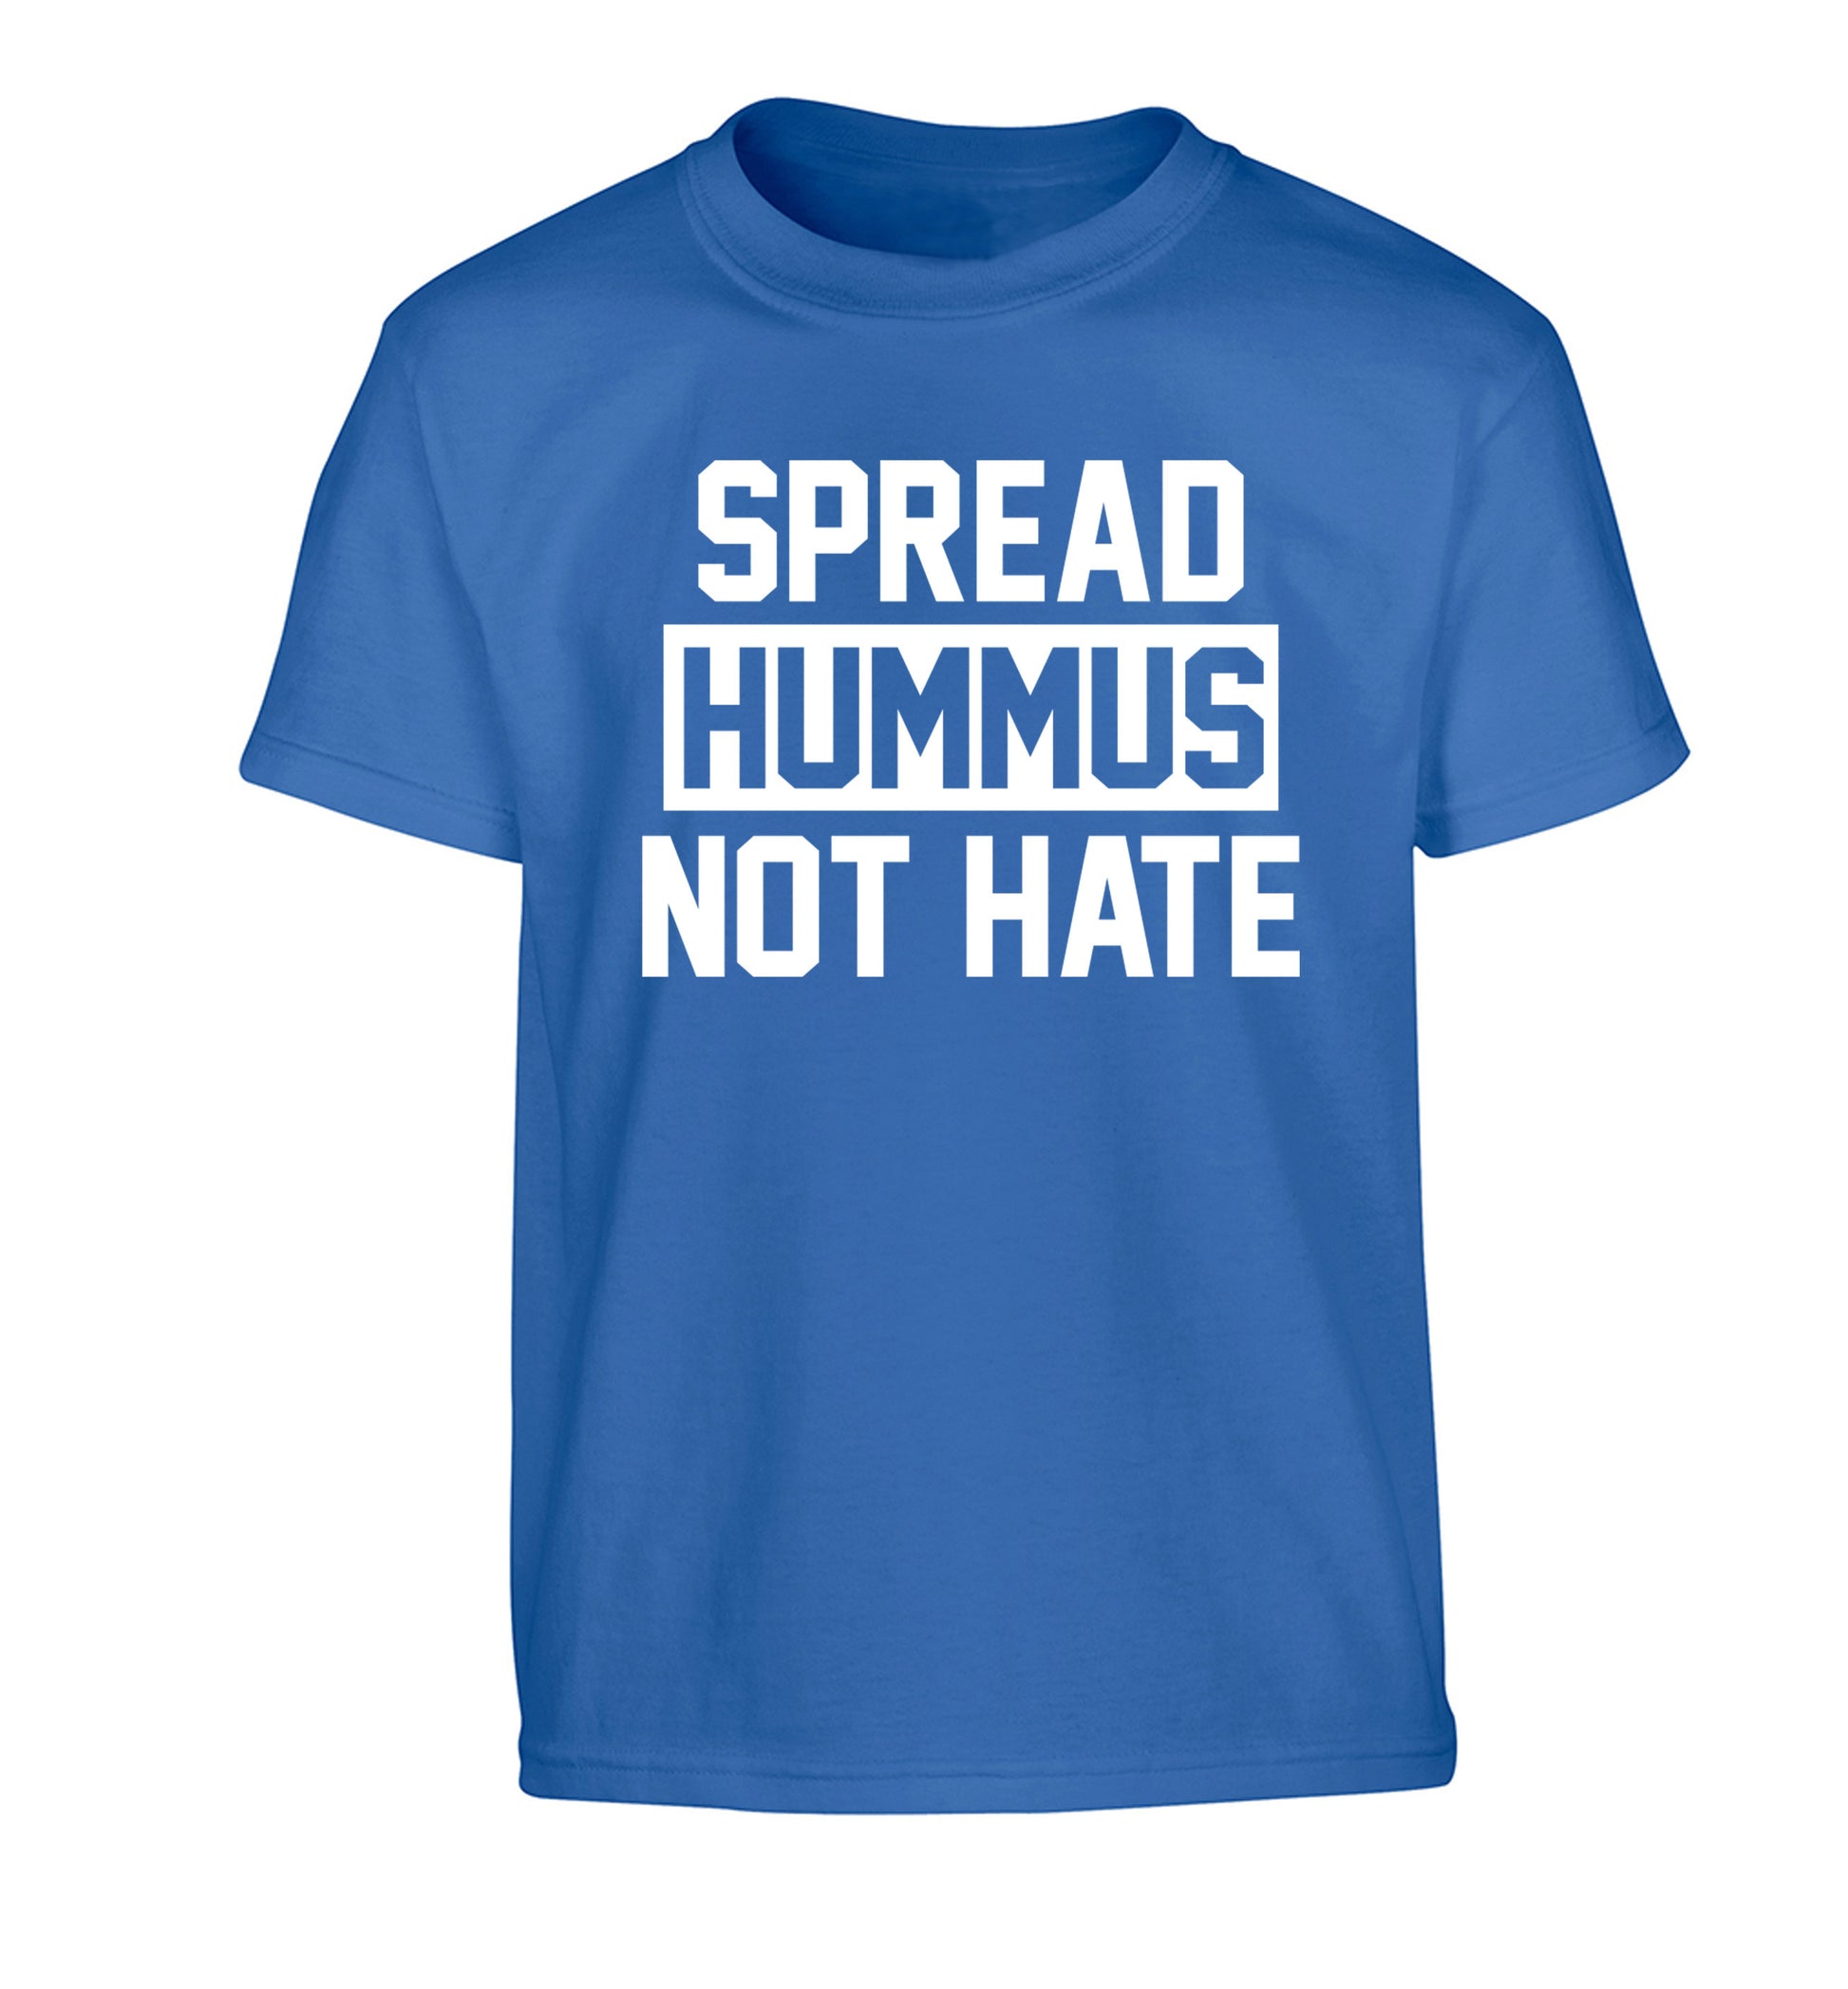 Spread hummus not hate Children's blue Tshirt 12-14 Years